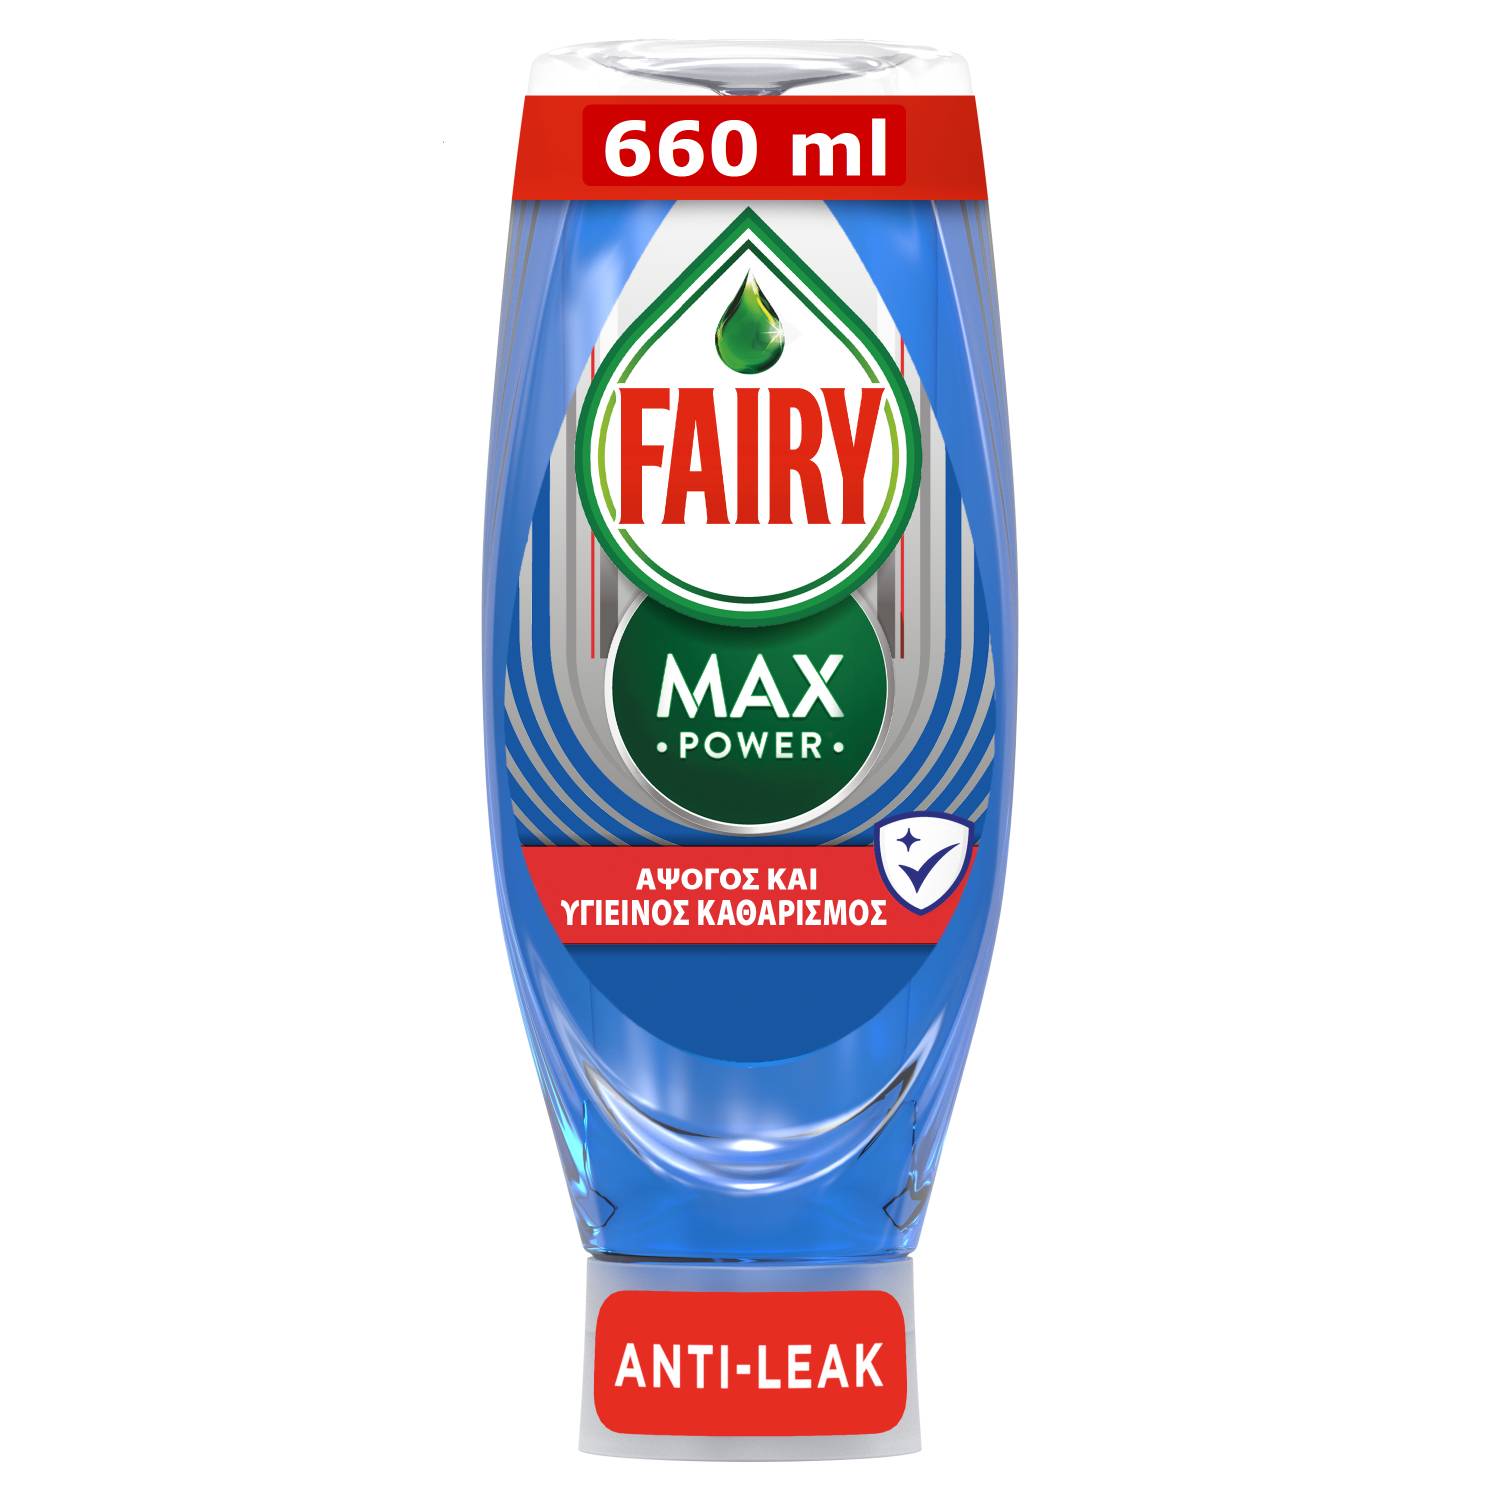 Υγρό Πιάτων Max Power Hygiene Fairy (660ml)